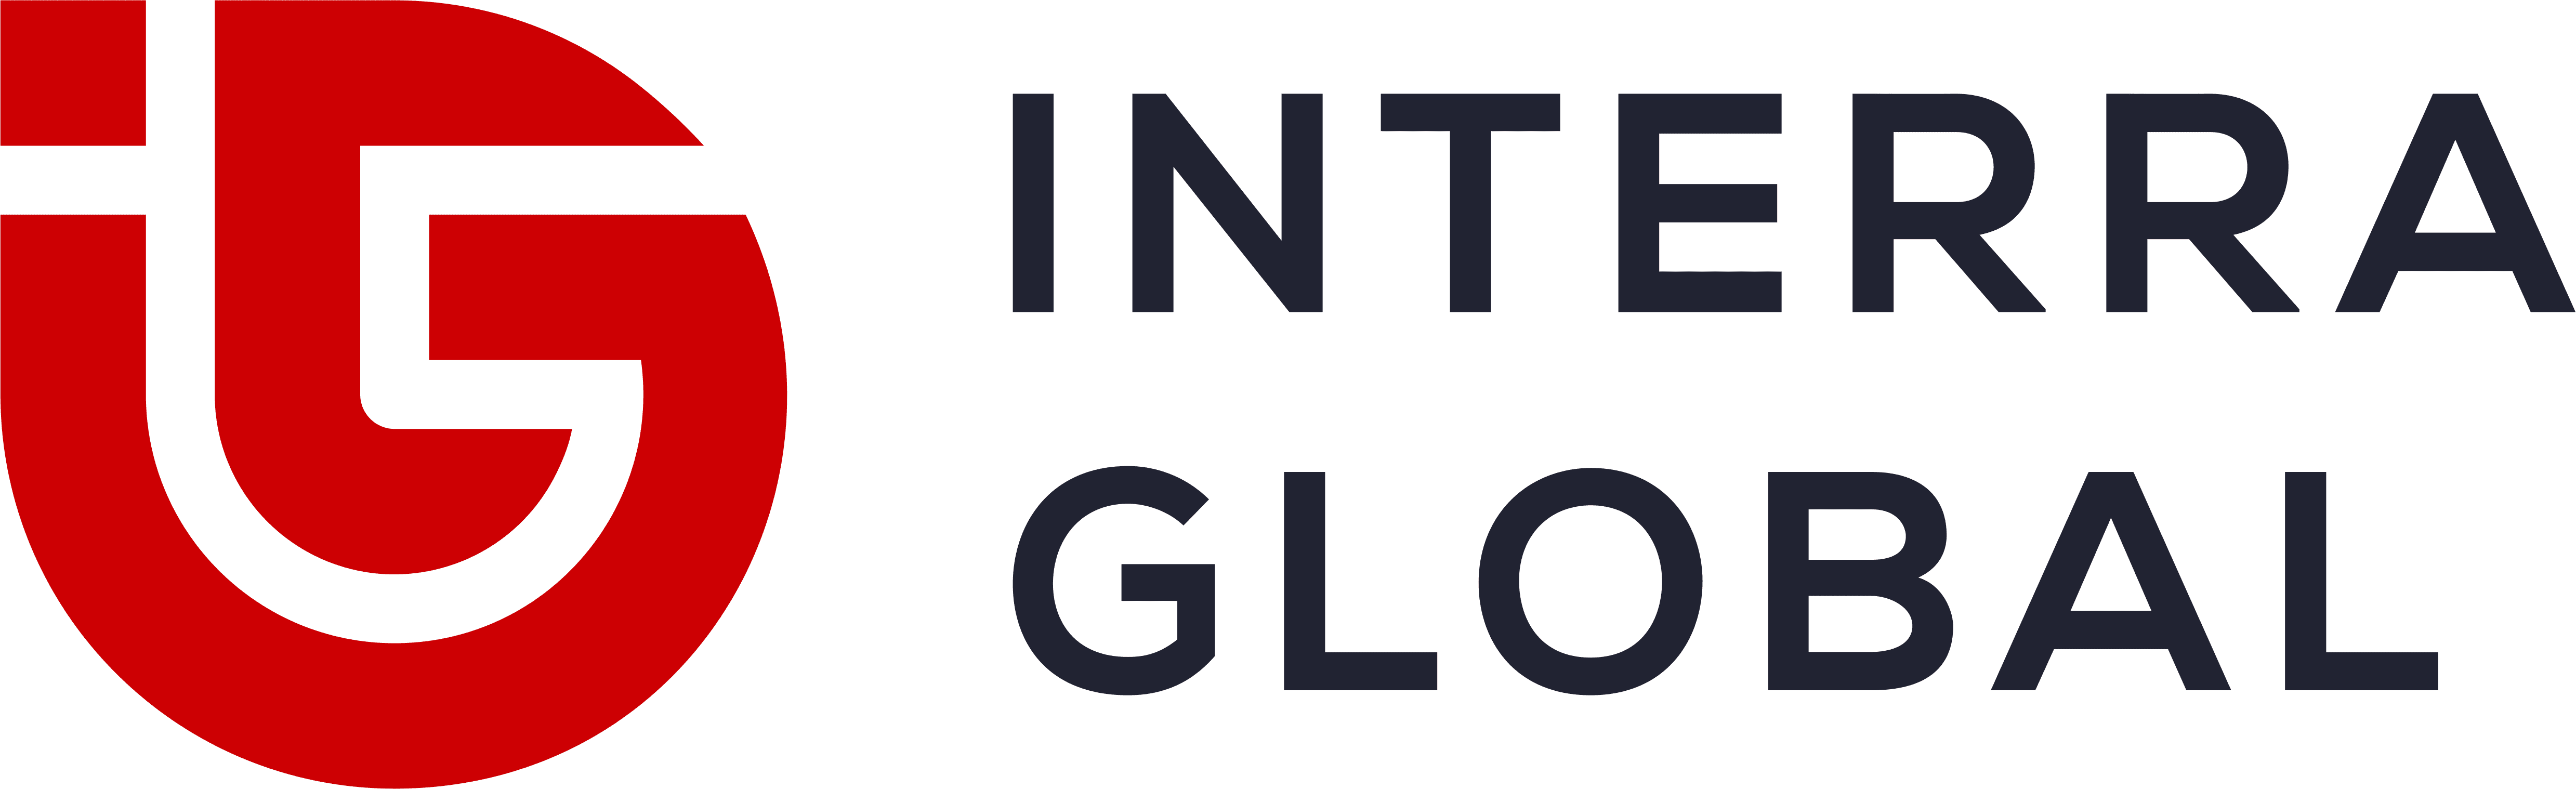 Interra Global